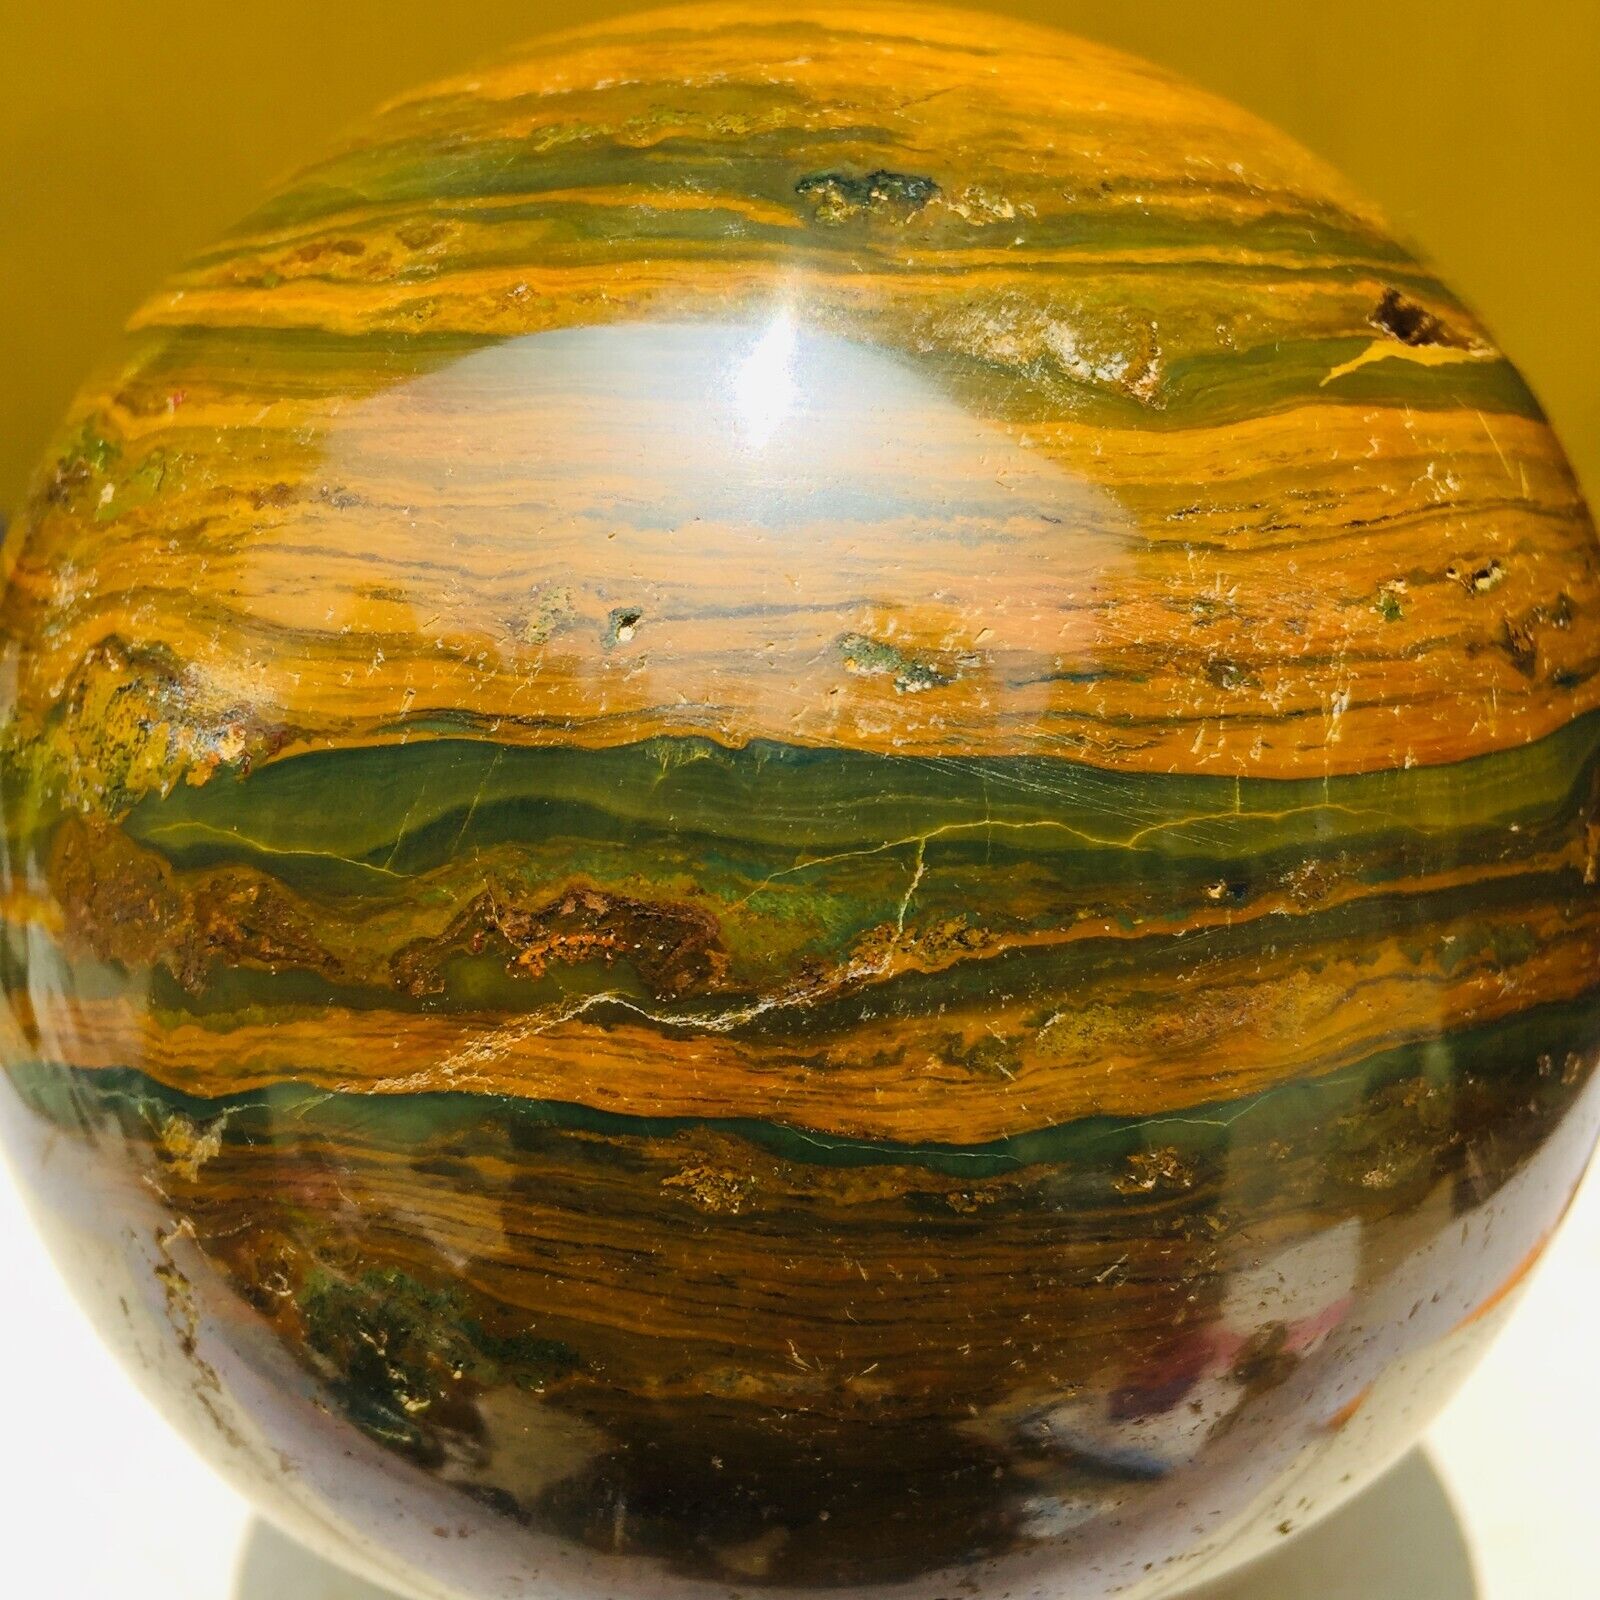 1915g Large Colourful Ocean Jasper Quartz Crystal Sphere Healing Specimen